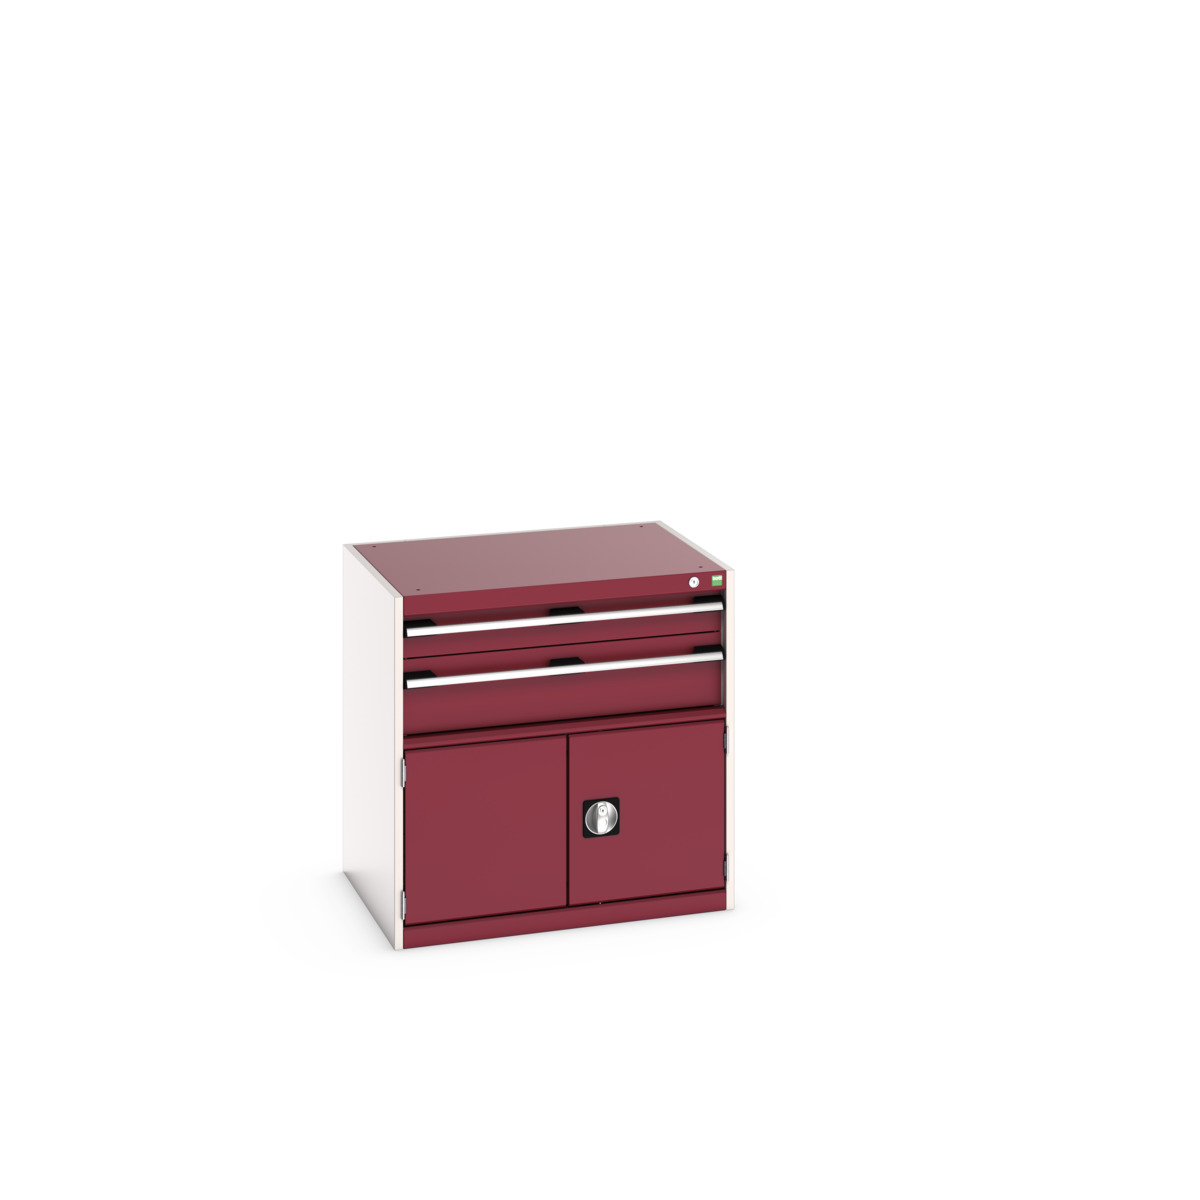 40020021.24V - cubio drawer-door cabinet